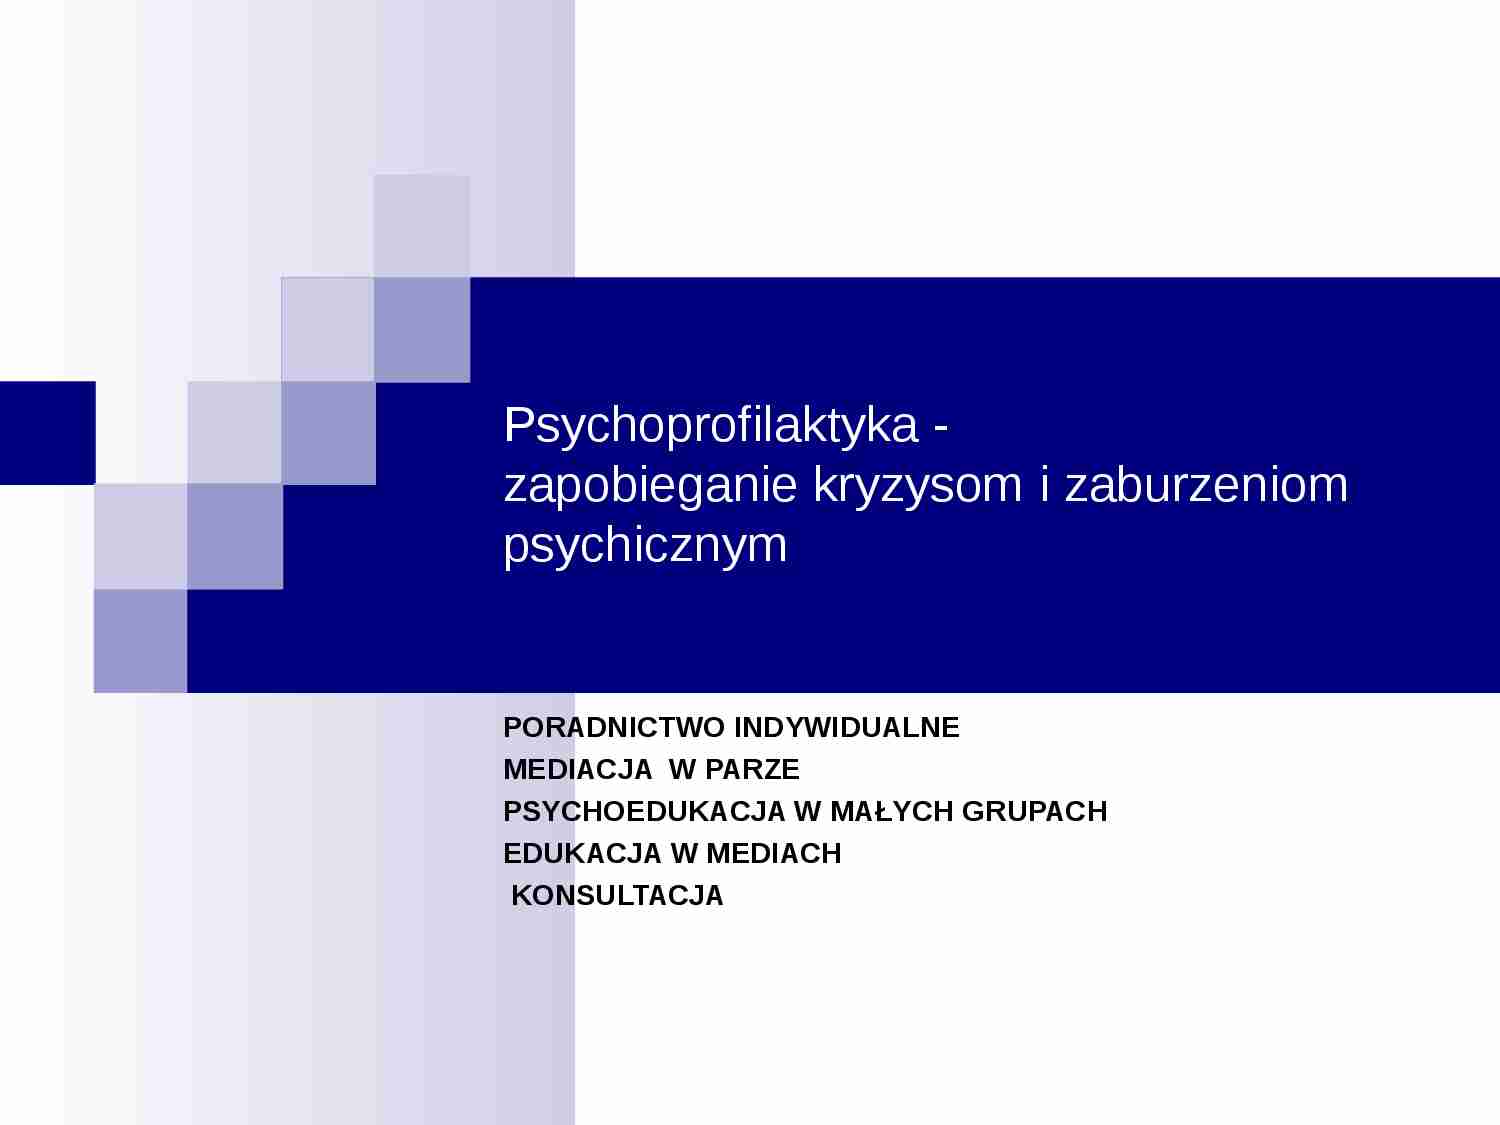 Psychoprofilaktyka - zapobieganie kryzysom i zaburzeniom psychicznych - strona 1